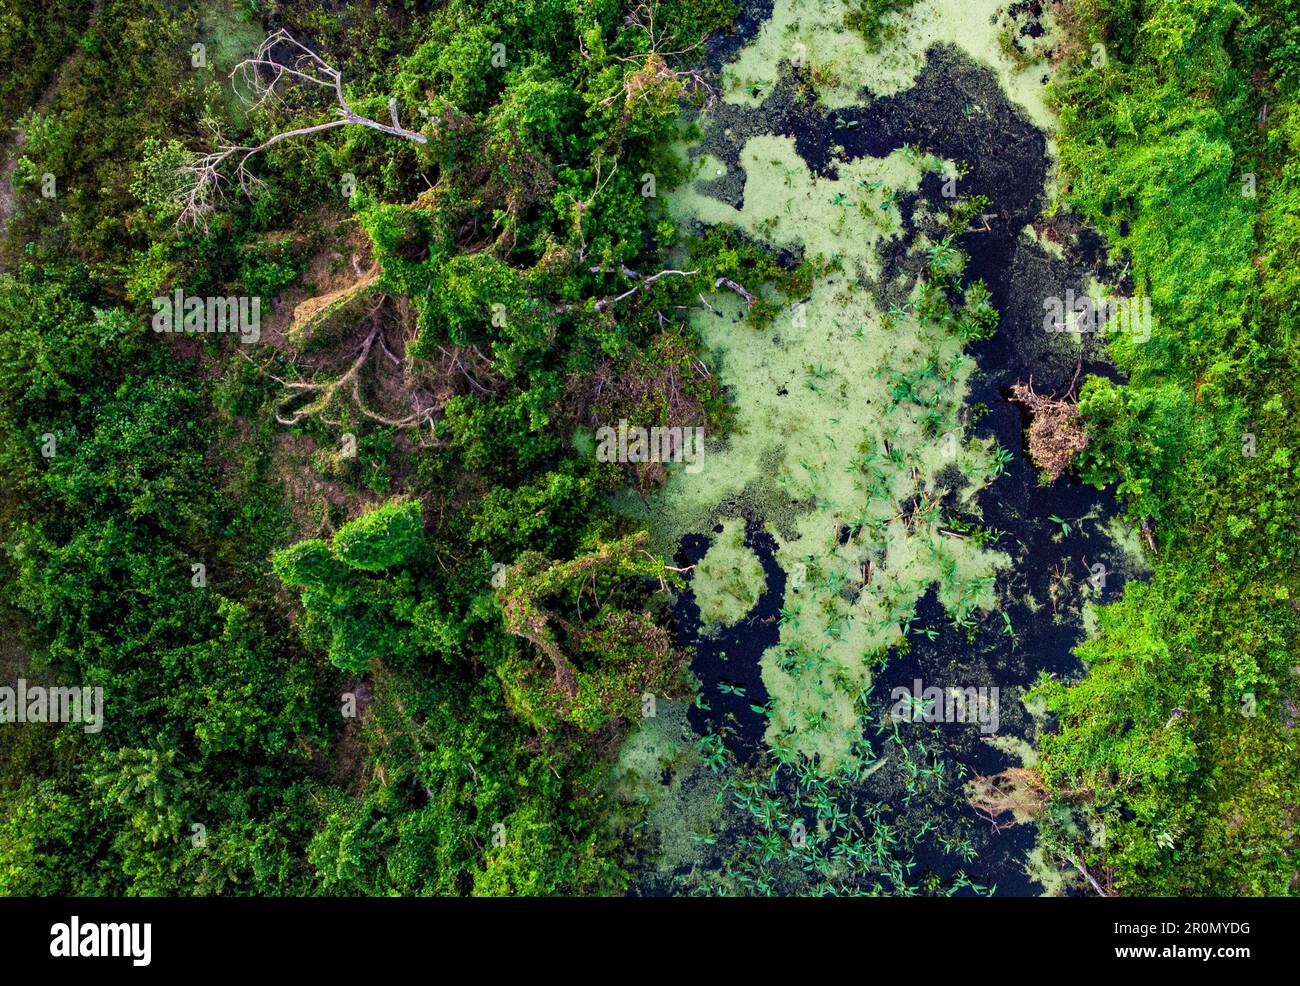 Une vue aérienne vibrante du Pantanal brésilien, avec une jungle verte luxuriante et des plantes marécageuses qui poussent parmi les arbres et l'eau. Banque D'Images